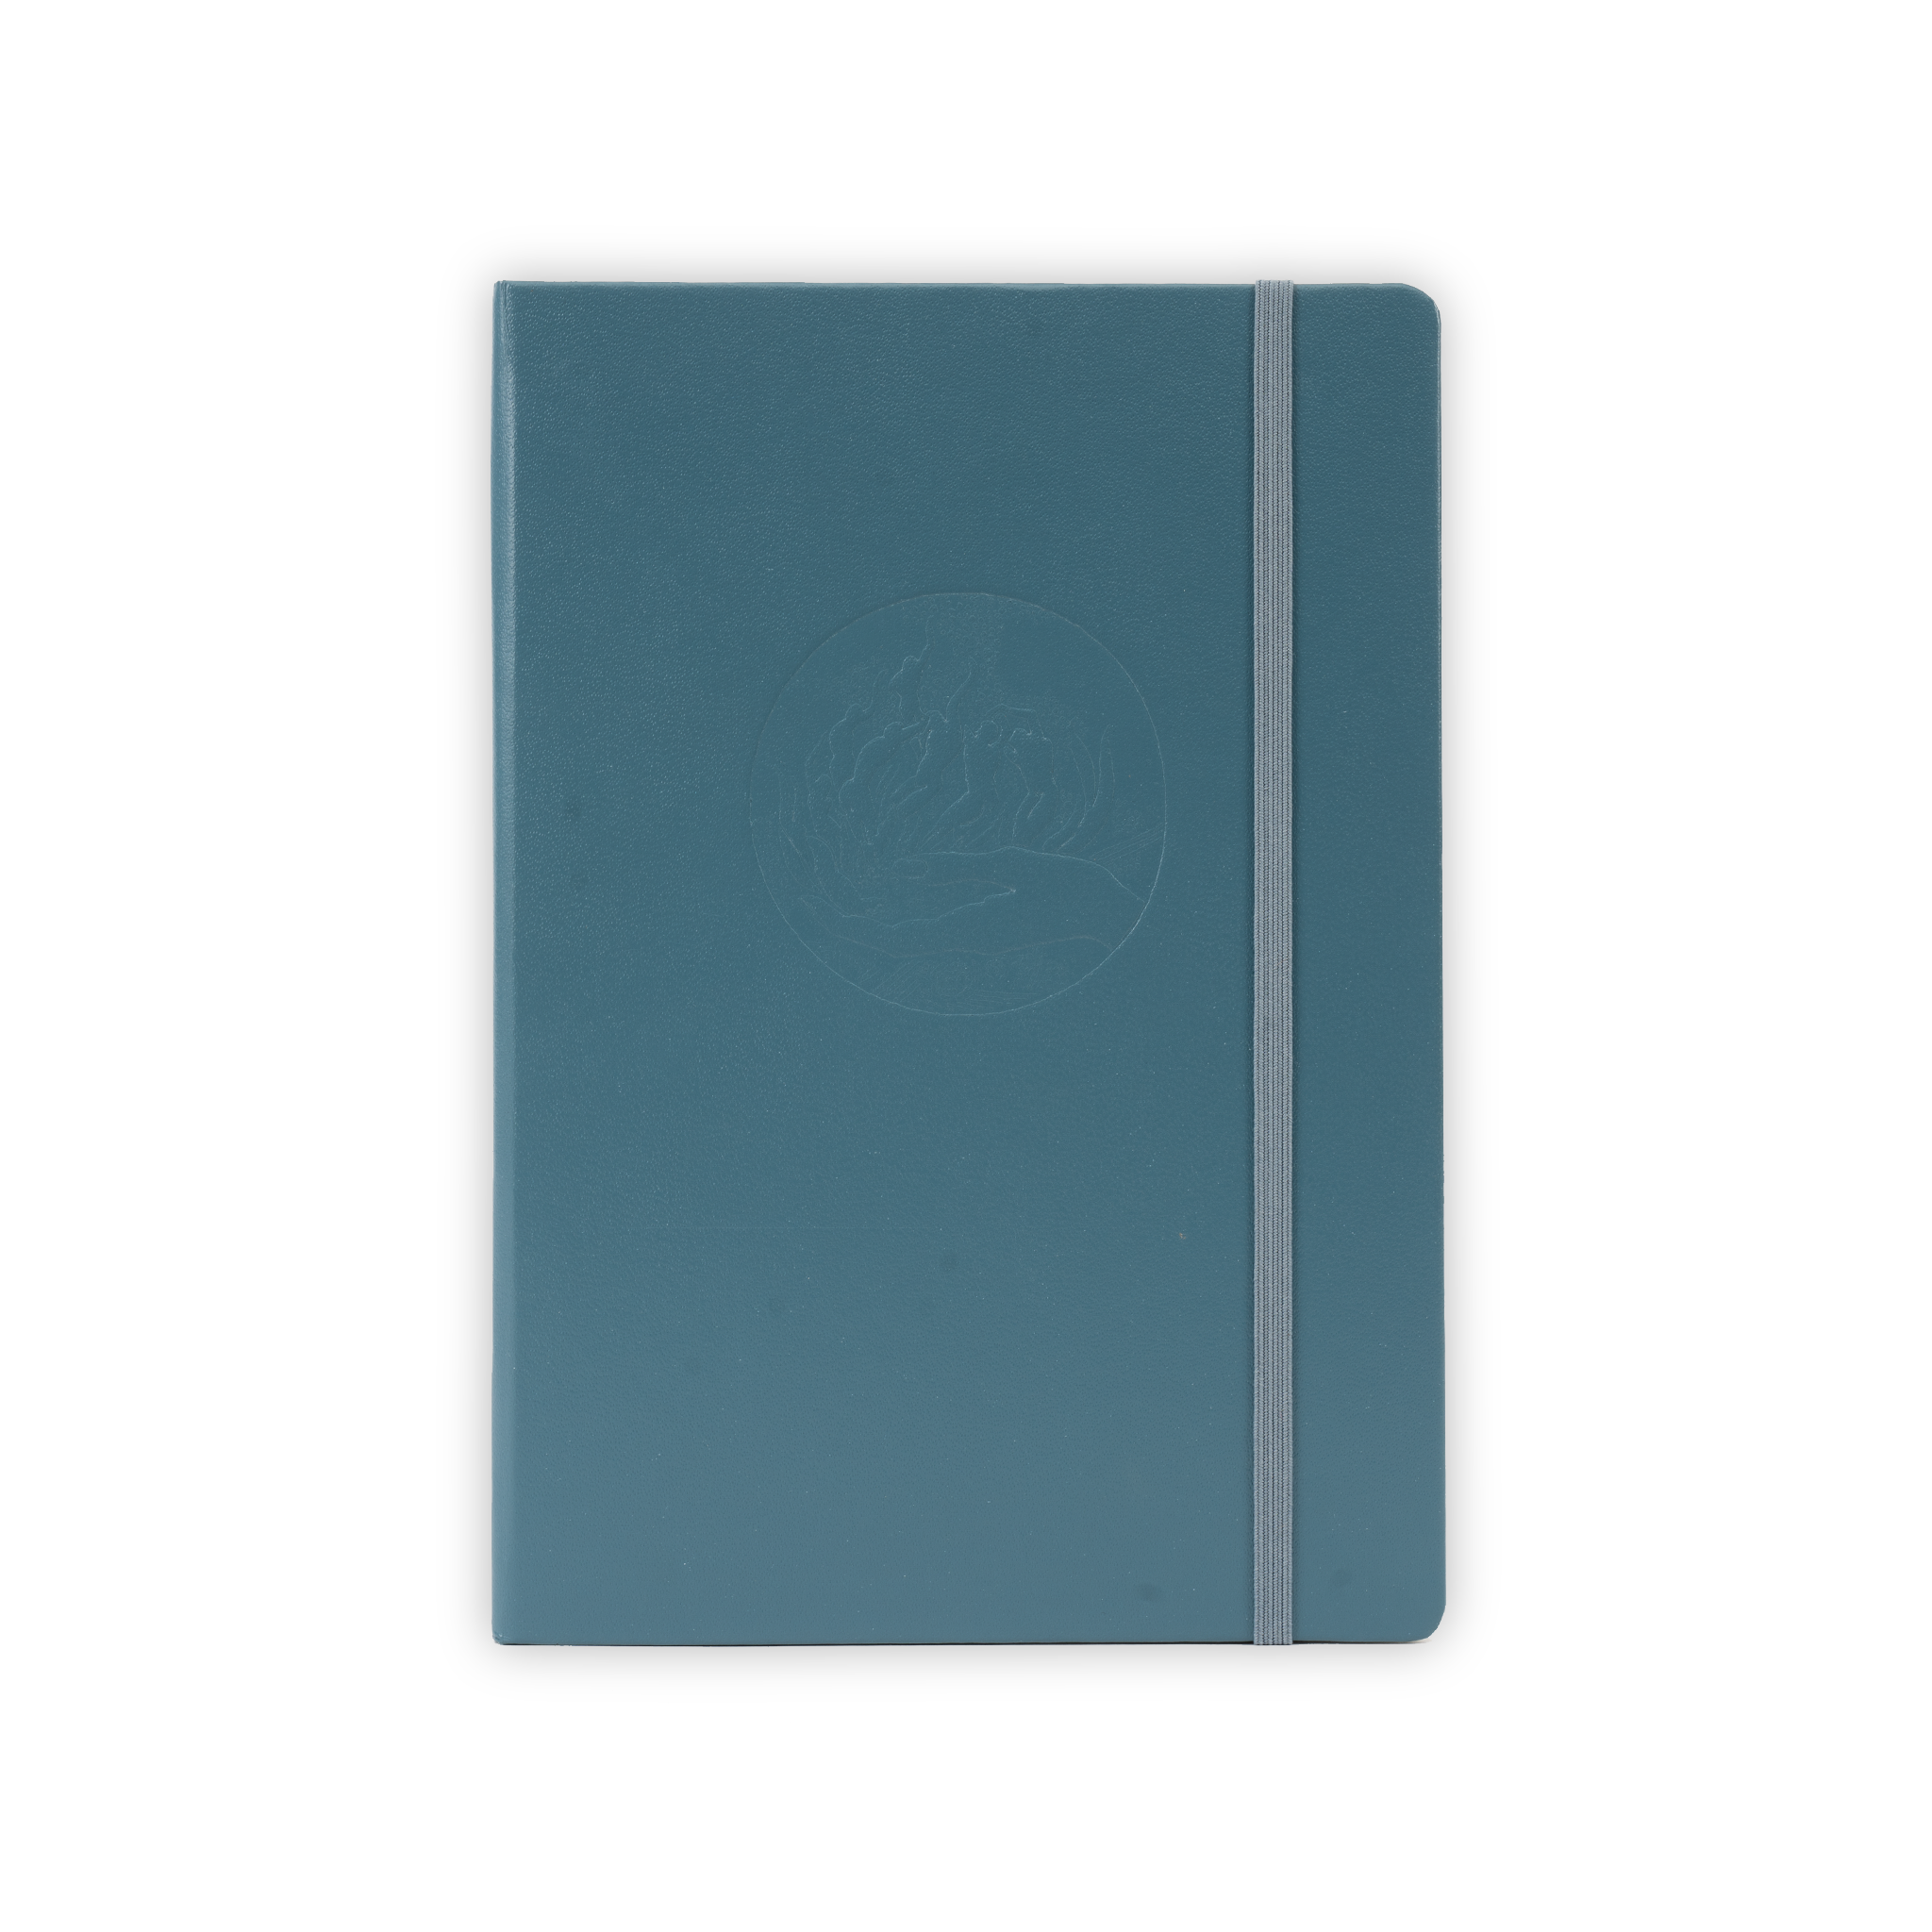 Kahlil Gibran Notebook